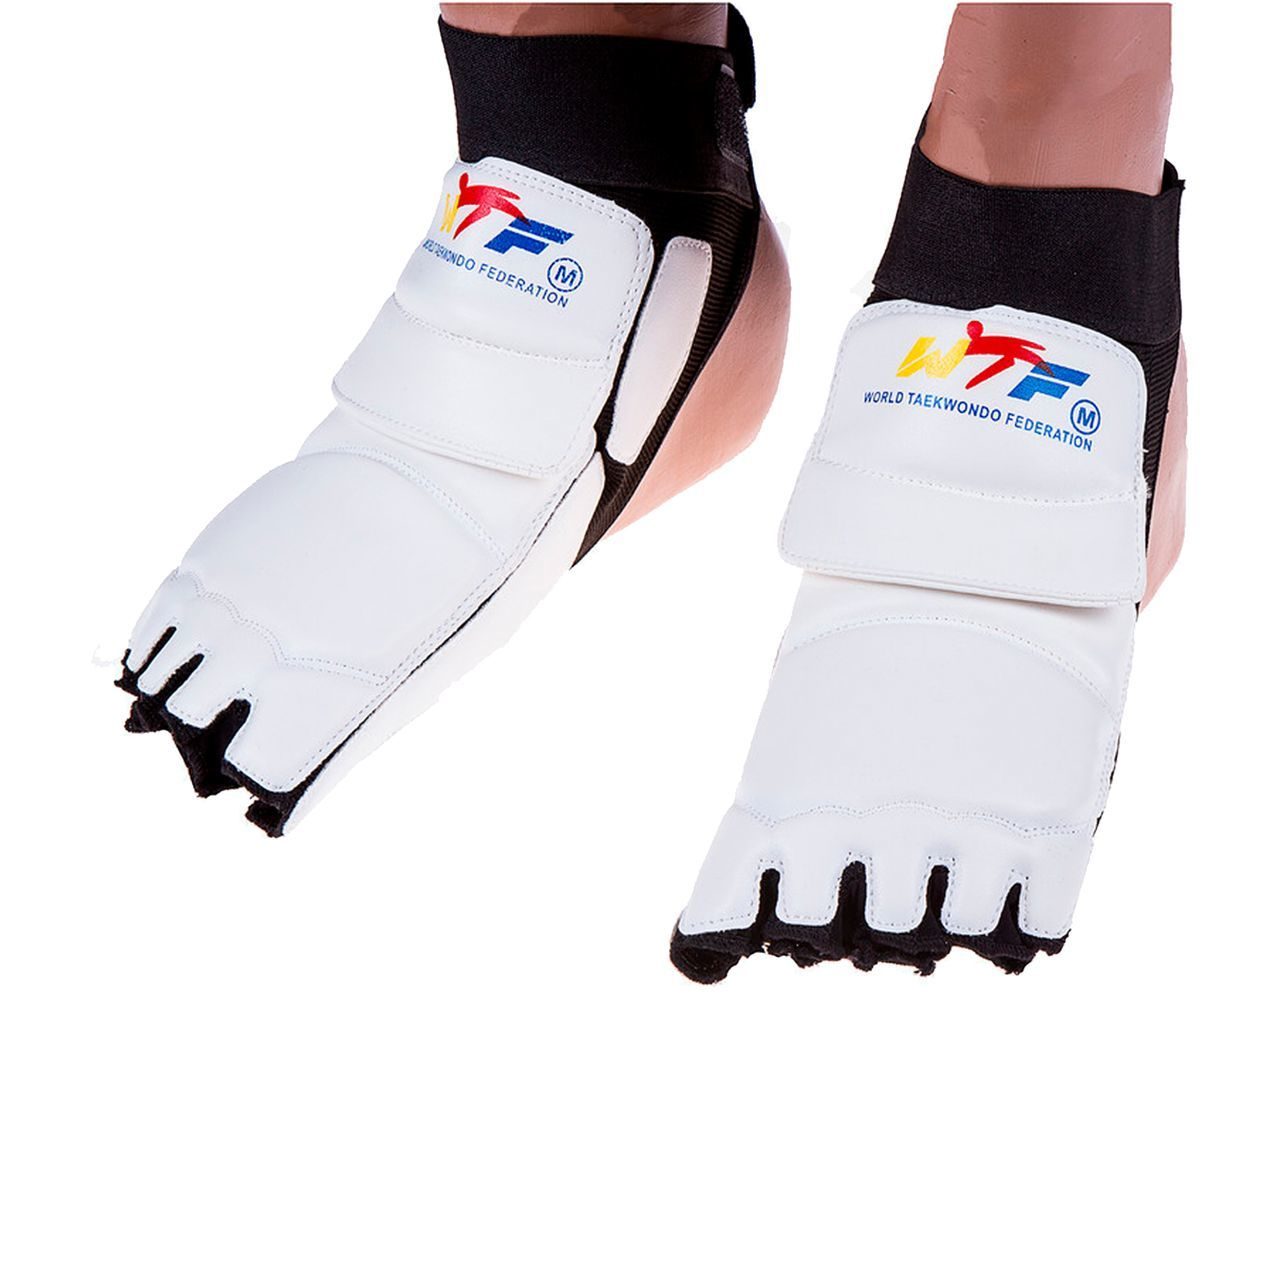 Стопы таэквондо. Защита голеностопа adidas для тхэквондо. Защита стопы для тхэквондо ВТФ. Защита стопы (футы) WT ZTT-020 ZTT. Щитки для ног ZTT 019 T.